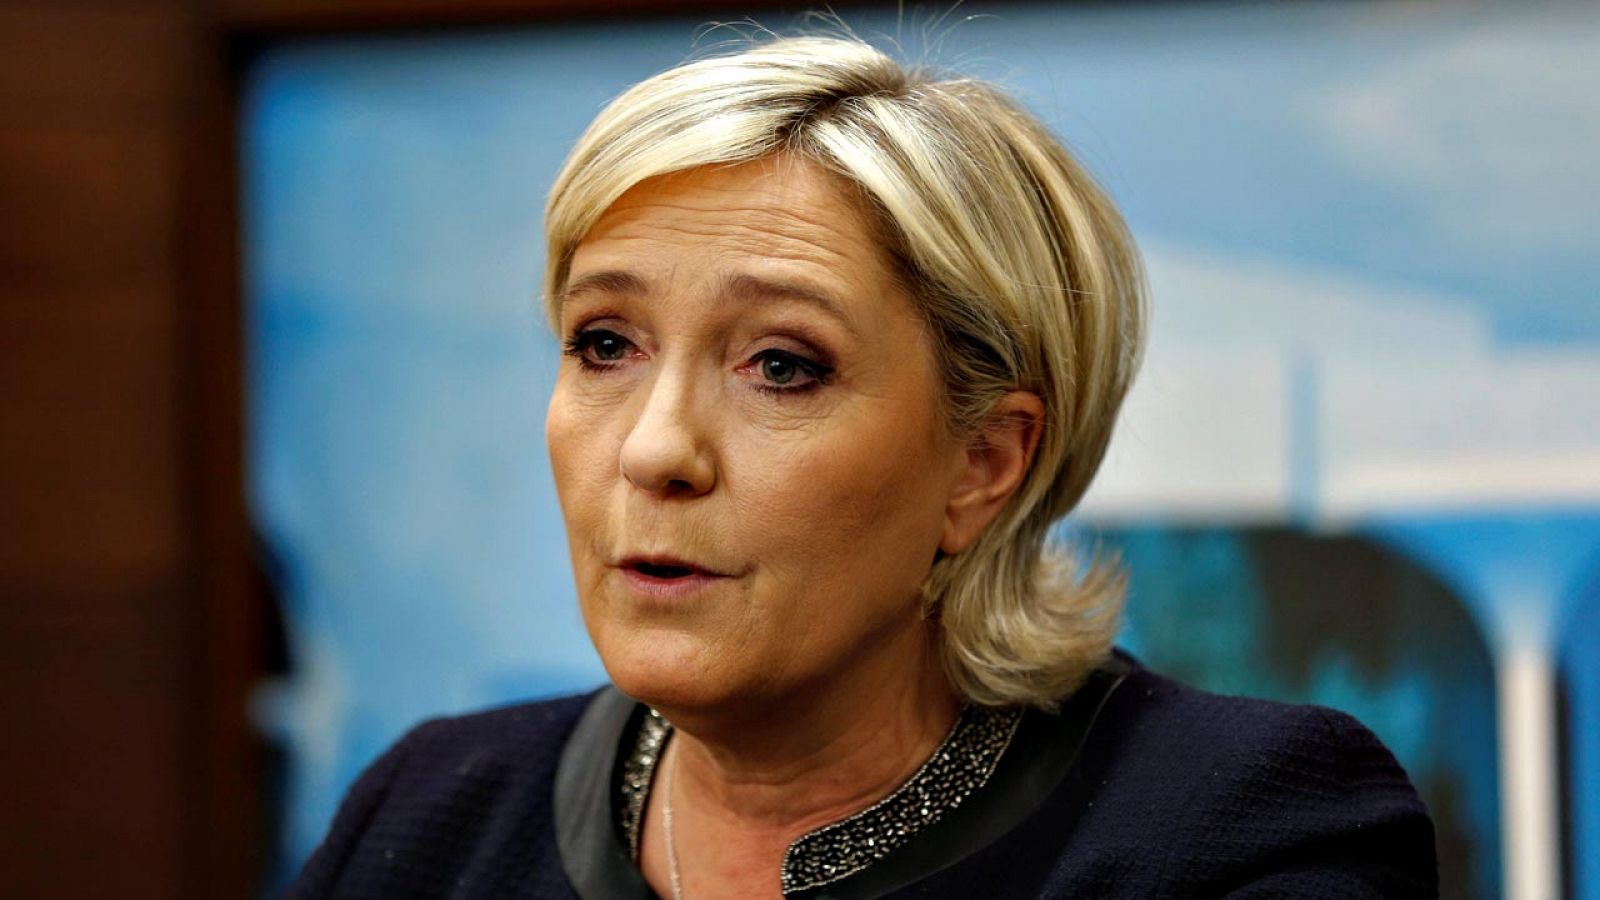 La líder del Frente Nacional y candidata a la presidencia de Francia, Marine le Pen